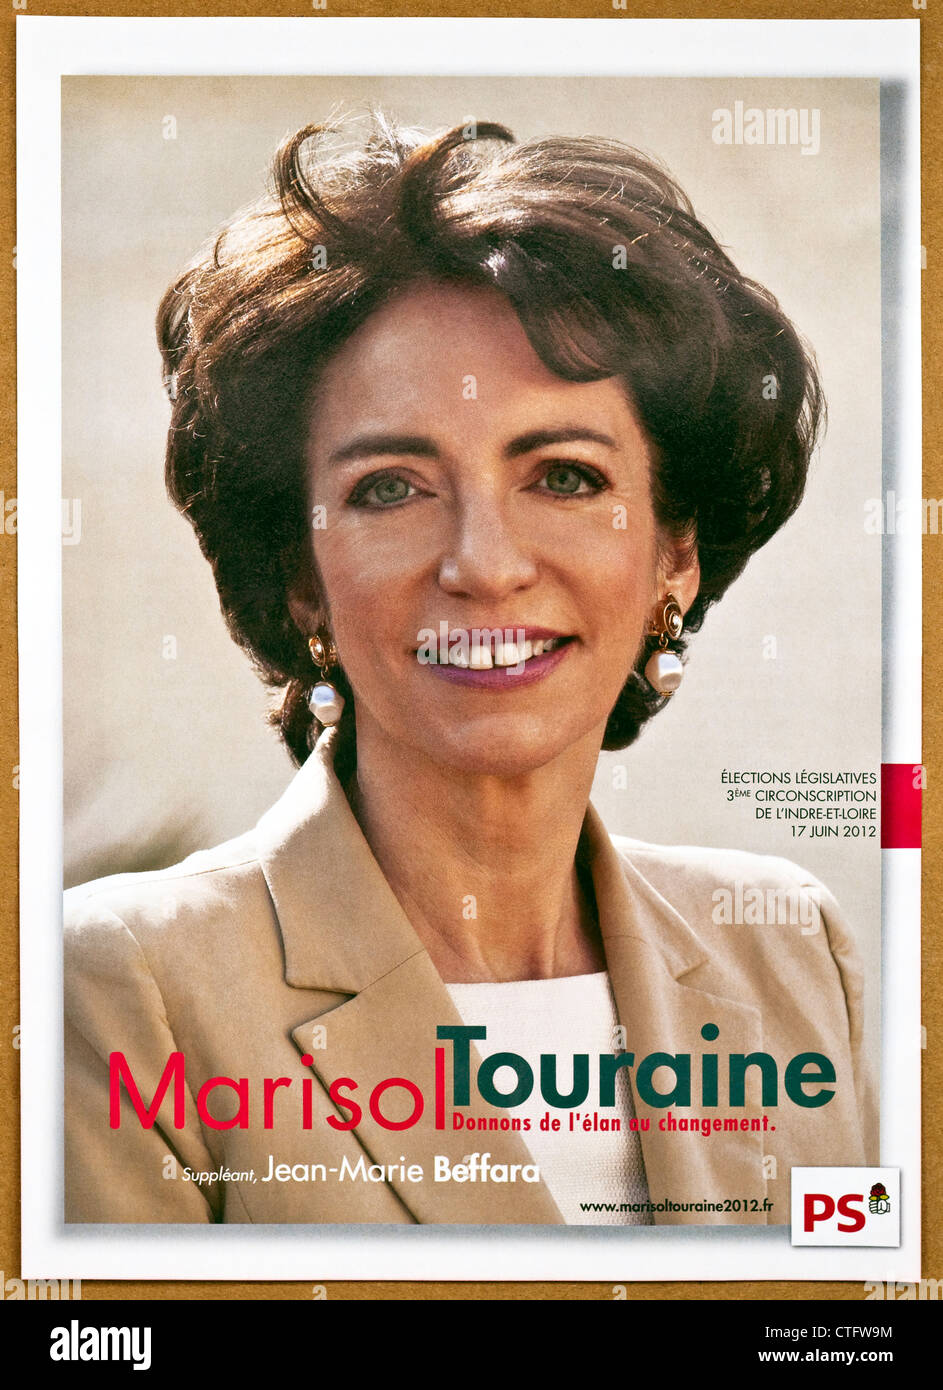 Französische nationale Wahlplakate und Flyer für Marisol Touraine (UMP - Center Rechtsextremismus) - Indre-et-Loire, Frankreich. Stockfoto